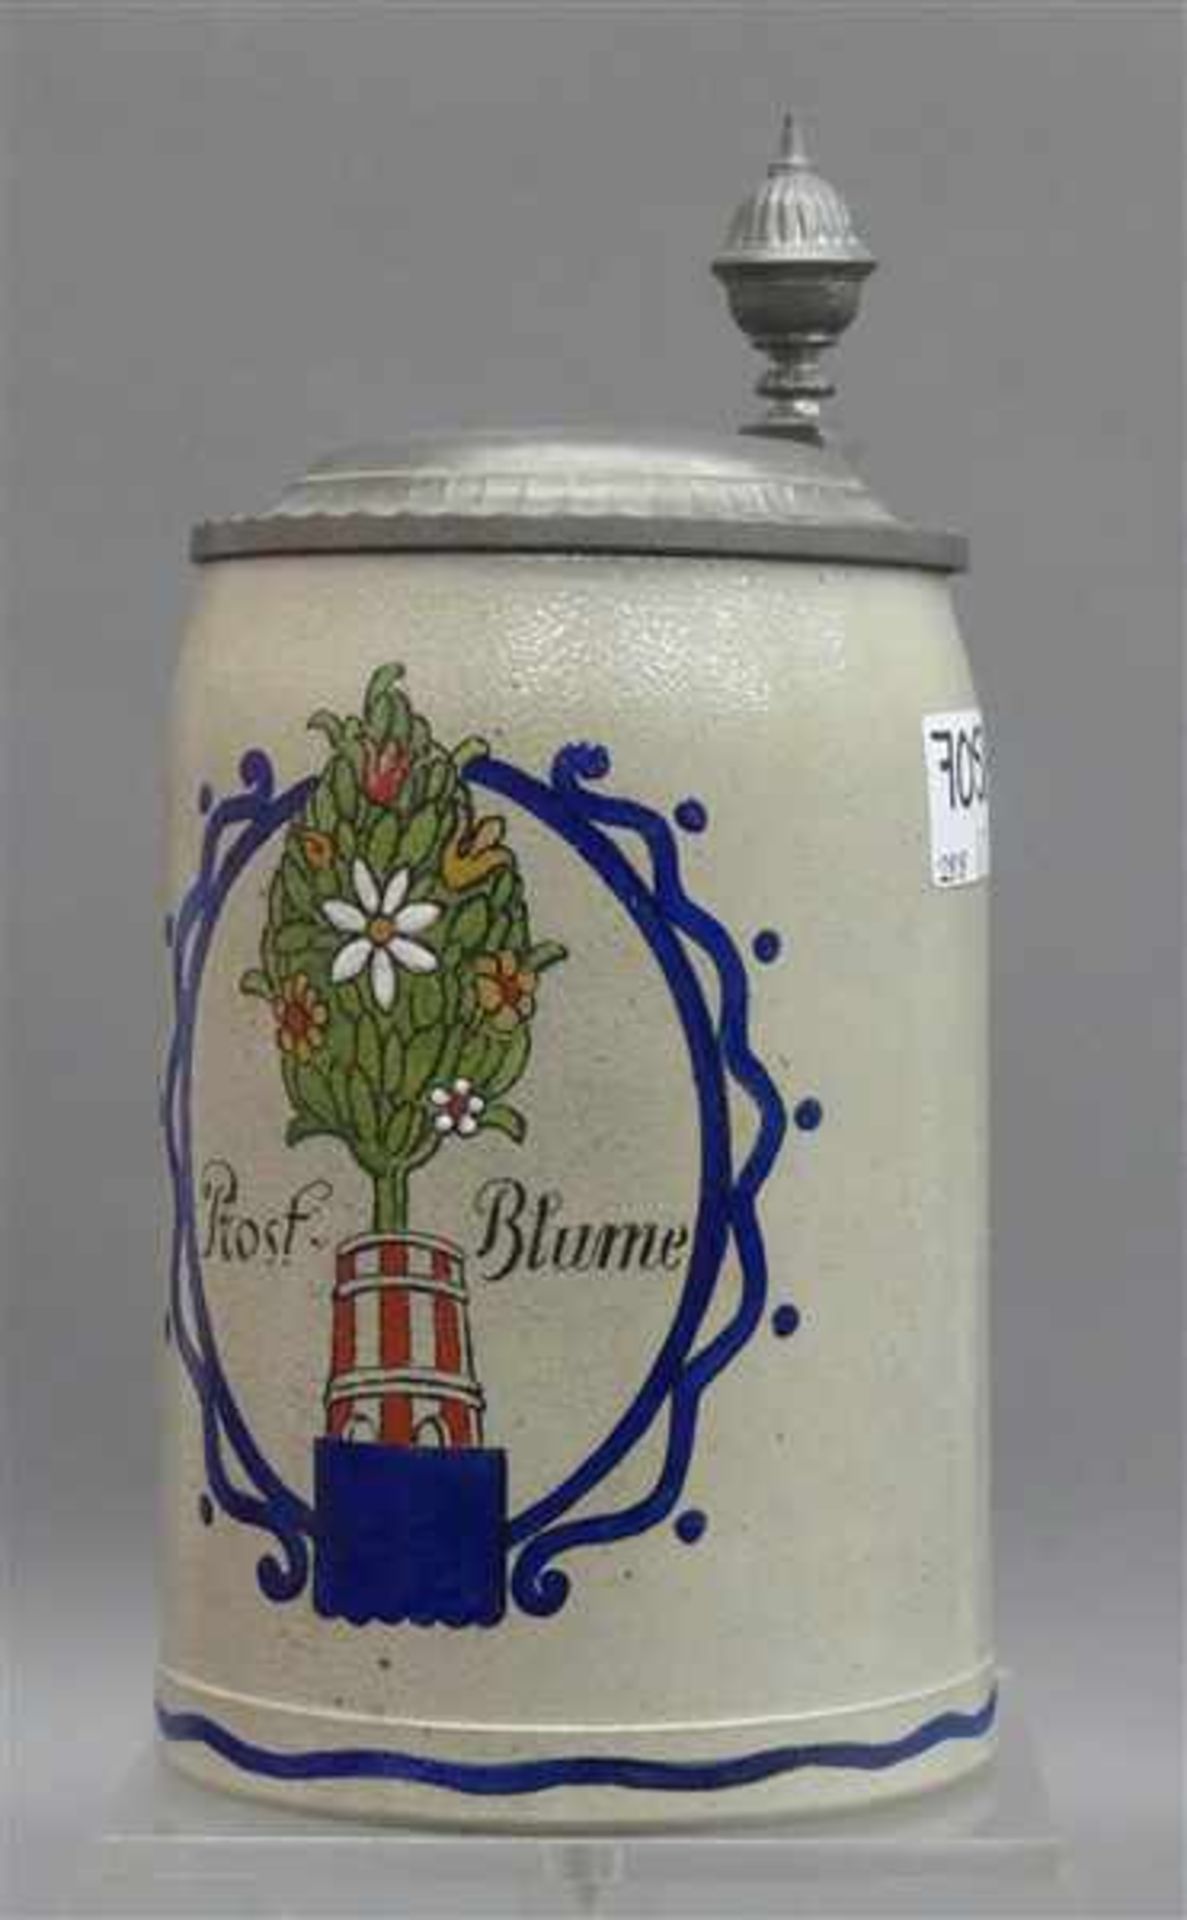 Bierkrug graues Steinzeug, Emaildekor, "Prost Blume", mit Zinndeckel, um 1900, h 19 cm,- - -20.